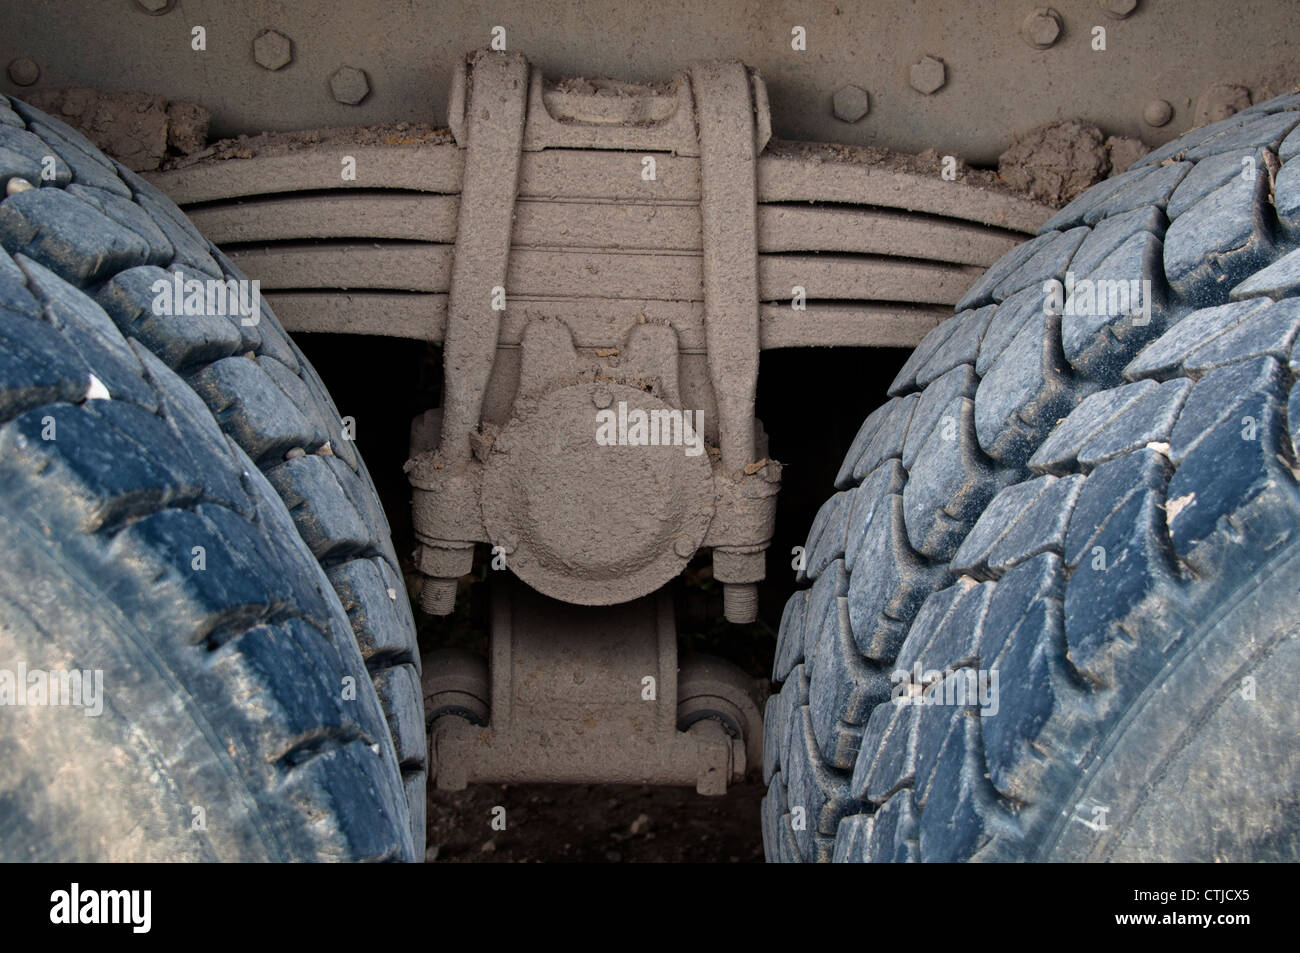 Detalle de la suspensión de ballesta con neumáticos de camión pesado sucio Foto de stock